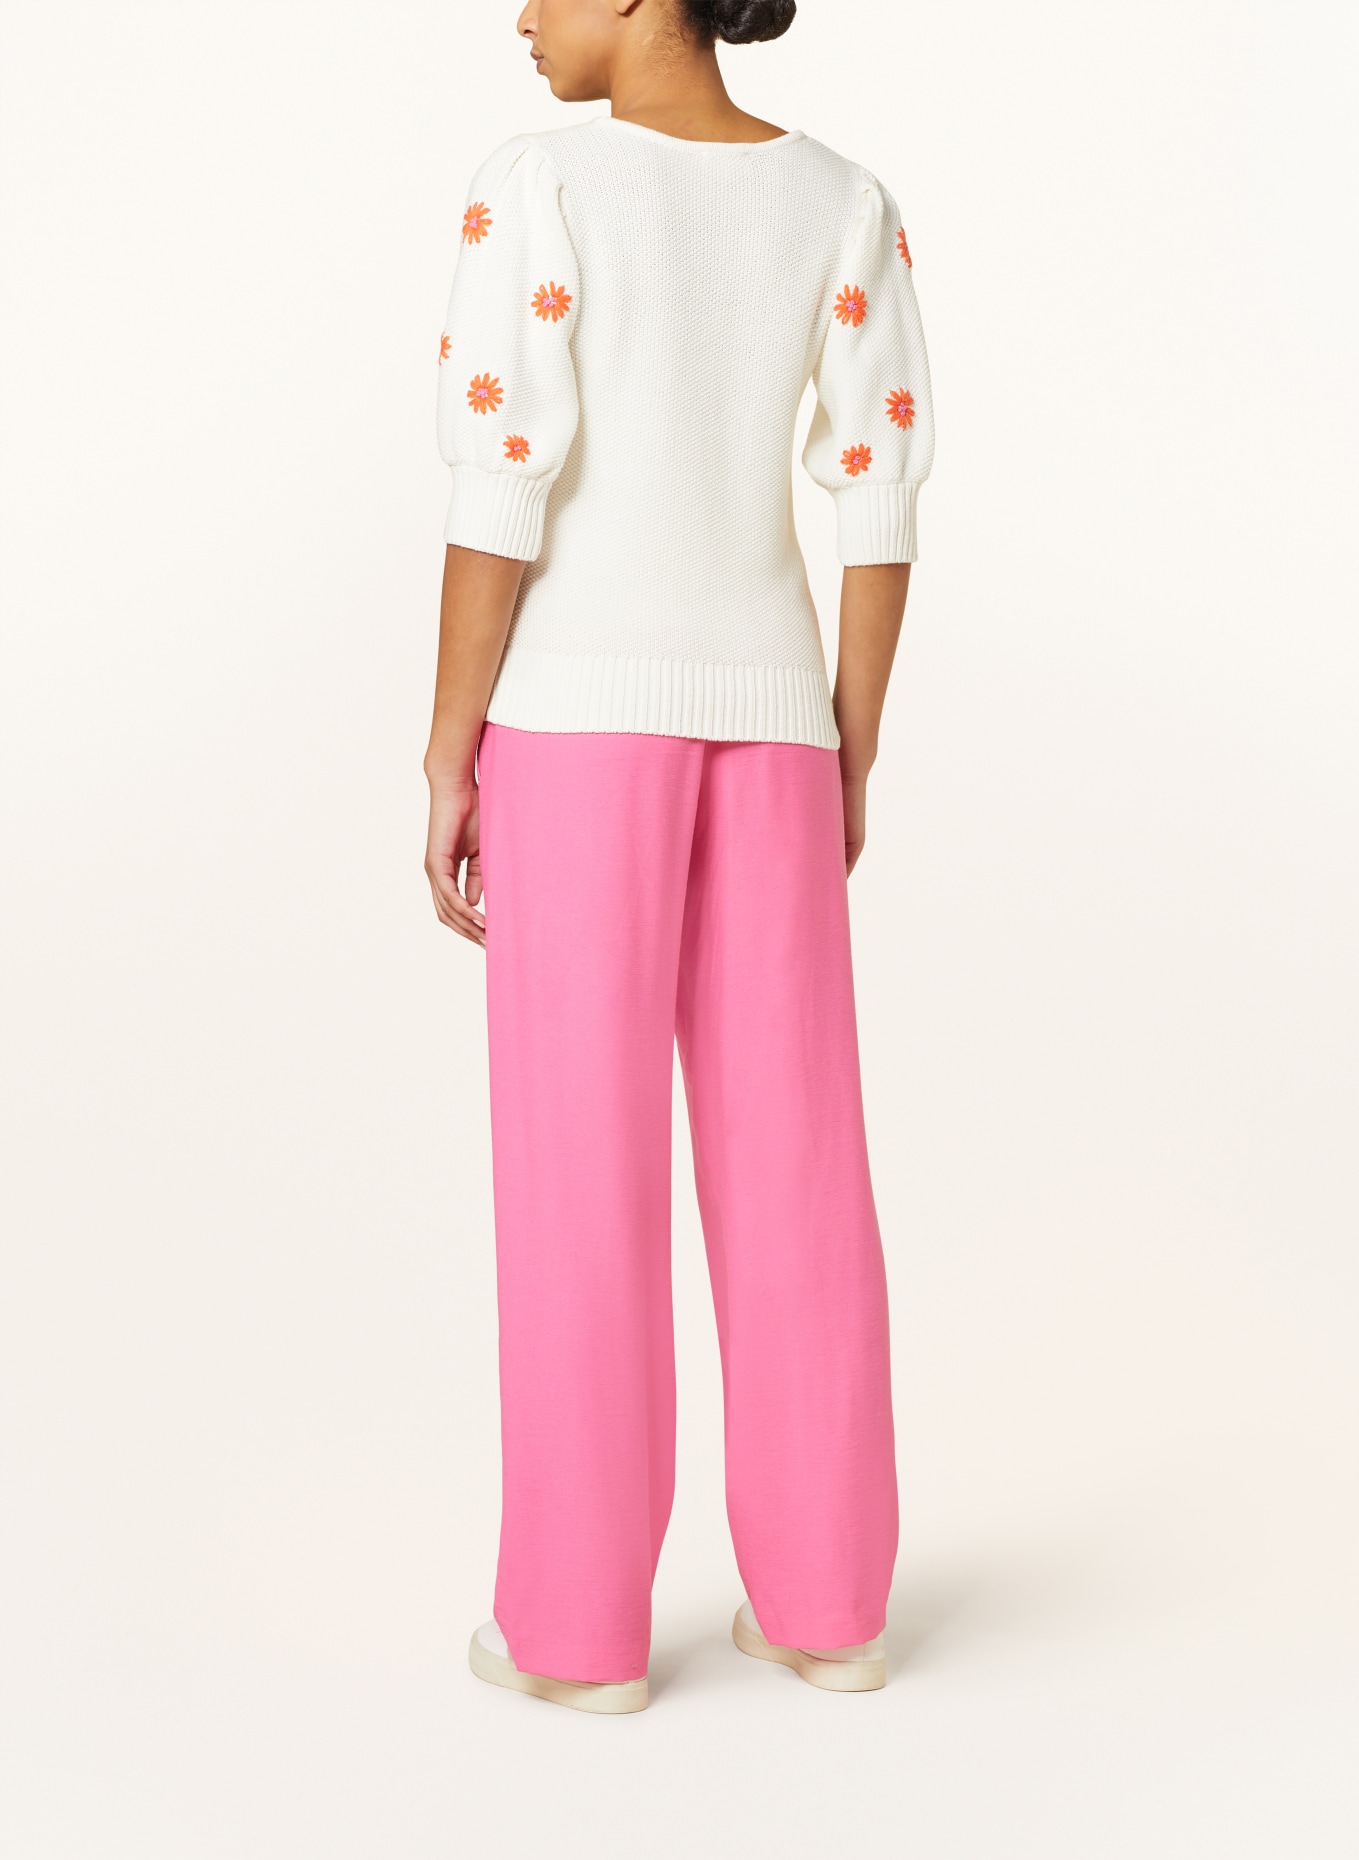 FABIENNE CHAPOT Pullover RICE, Farbe: WEISS/ ORANGE (Bild 3)